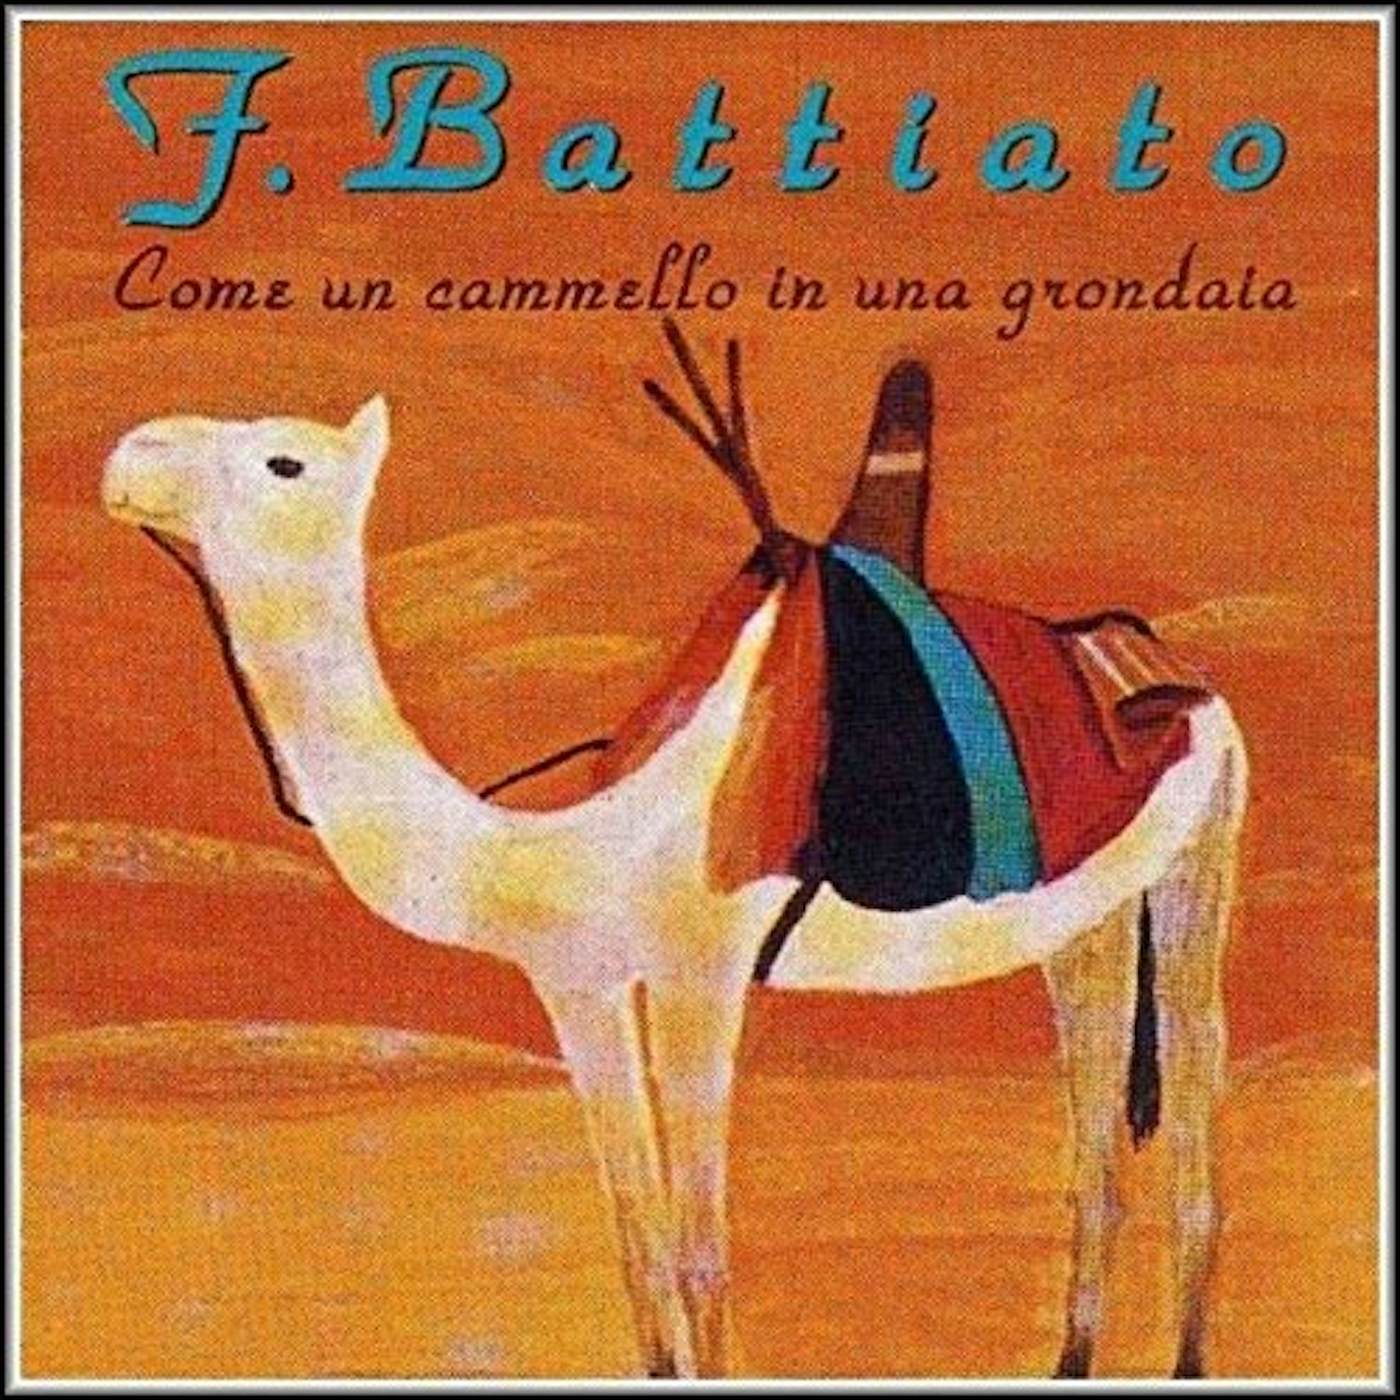 Franco Battiato COME UN CAMMELLO IN UNA GRONDAIA Vinyl Record